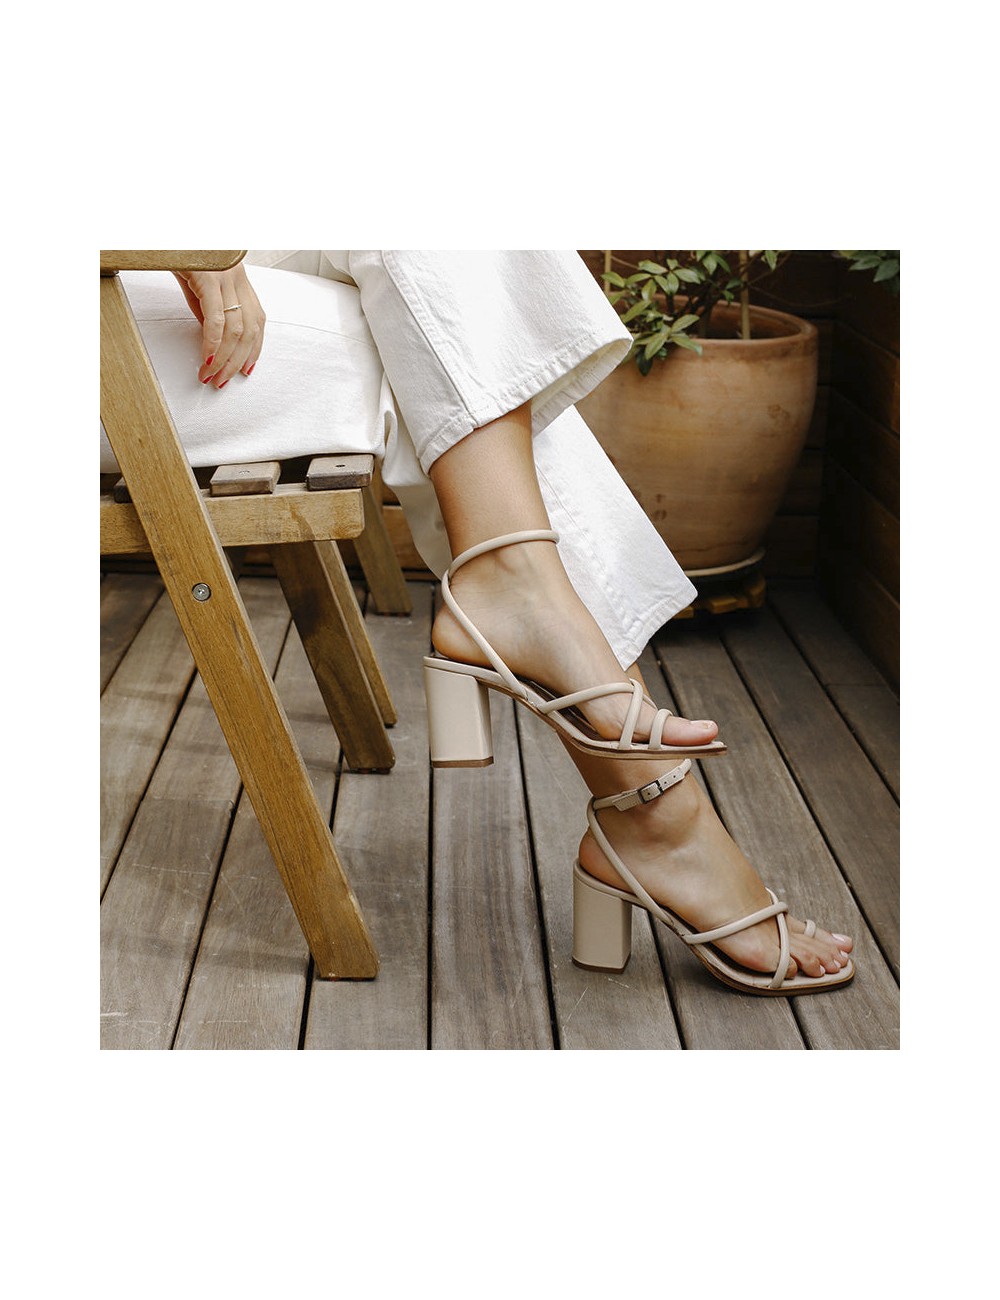 Sandales cuir beige bride cheville - Accessoires pour chaussures